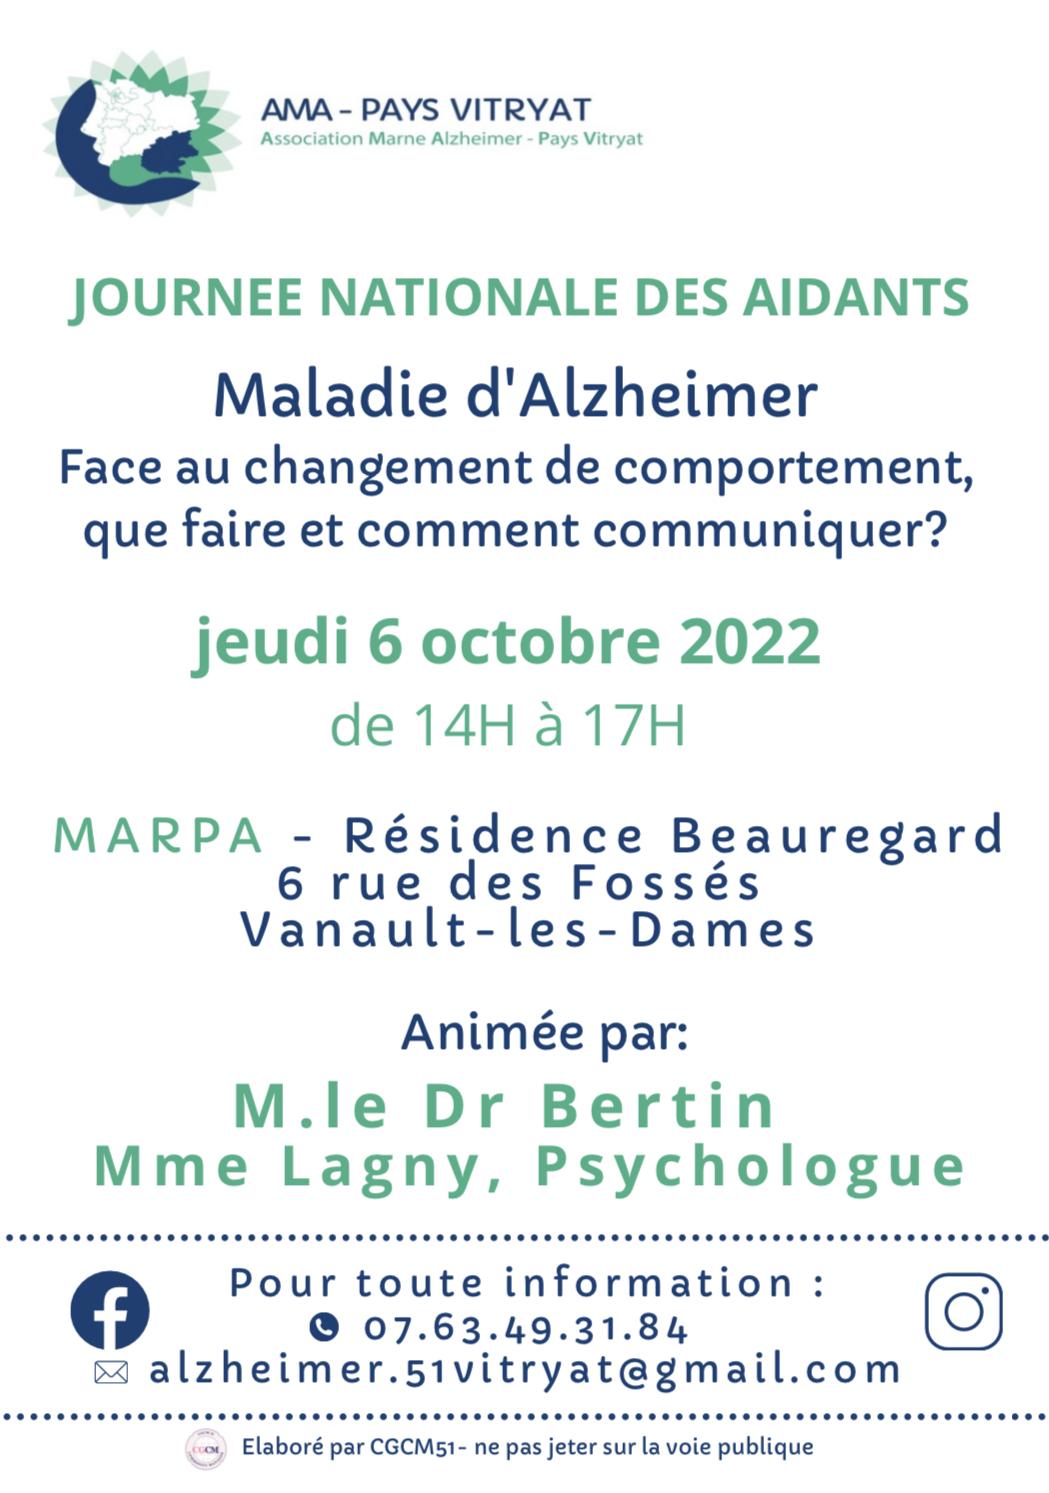 Image de couverture - Association Maladie Alzheimer - MARPA Vanault les Dames